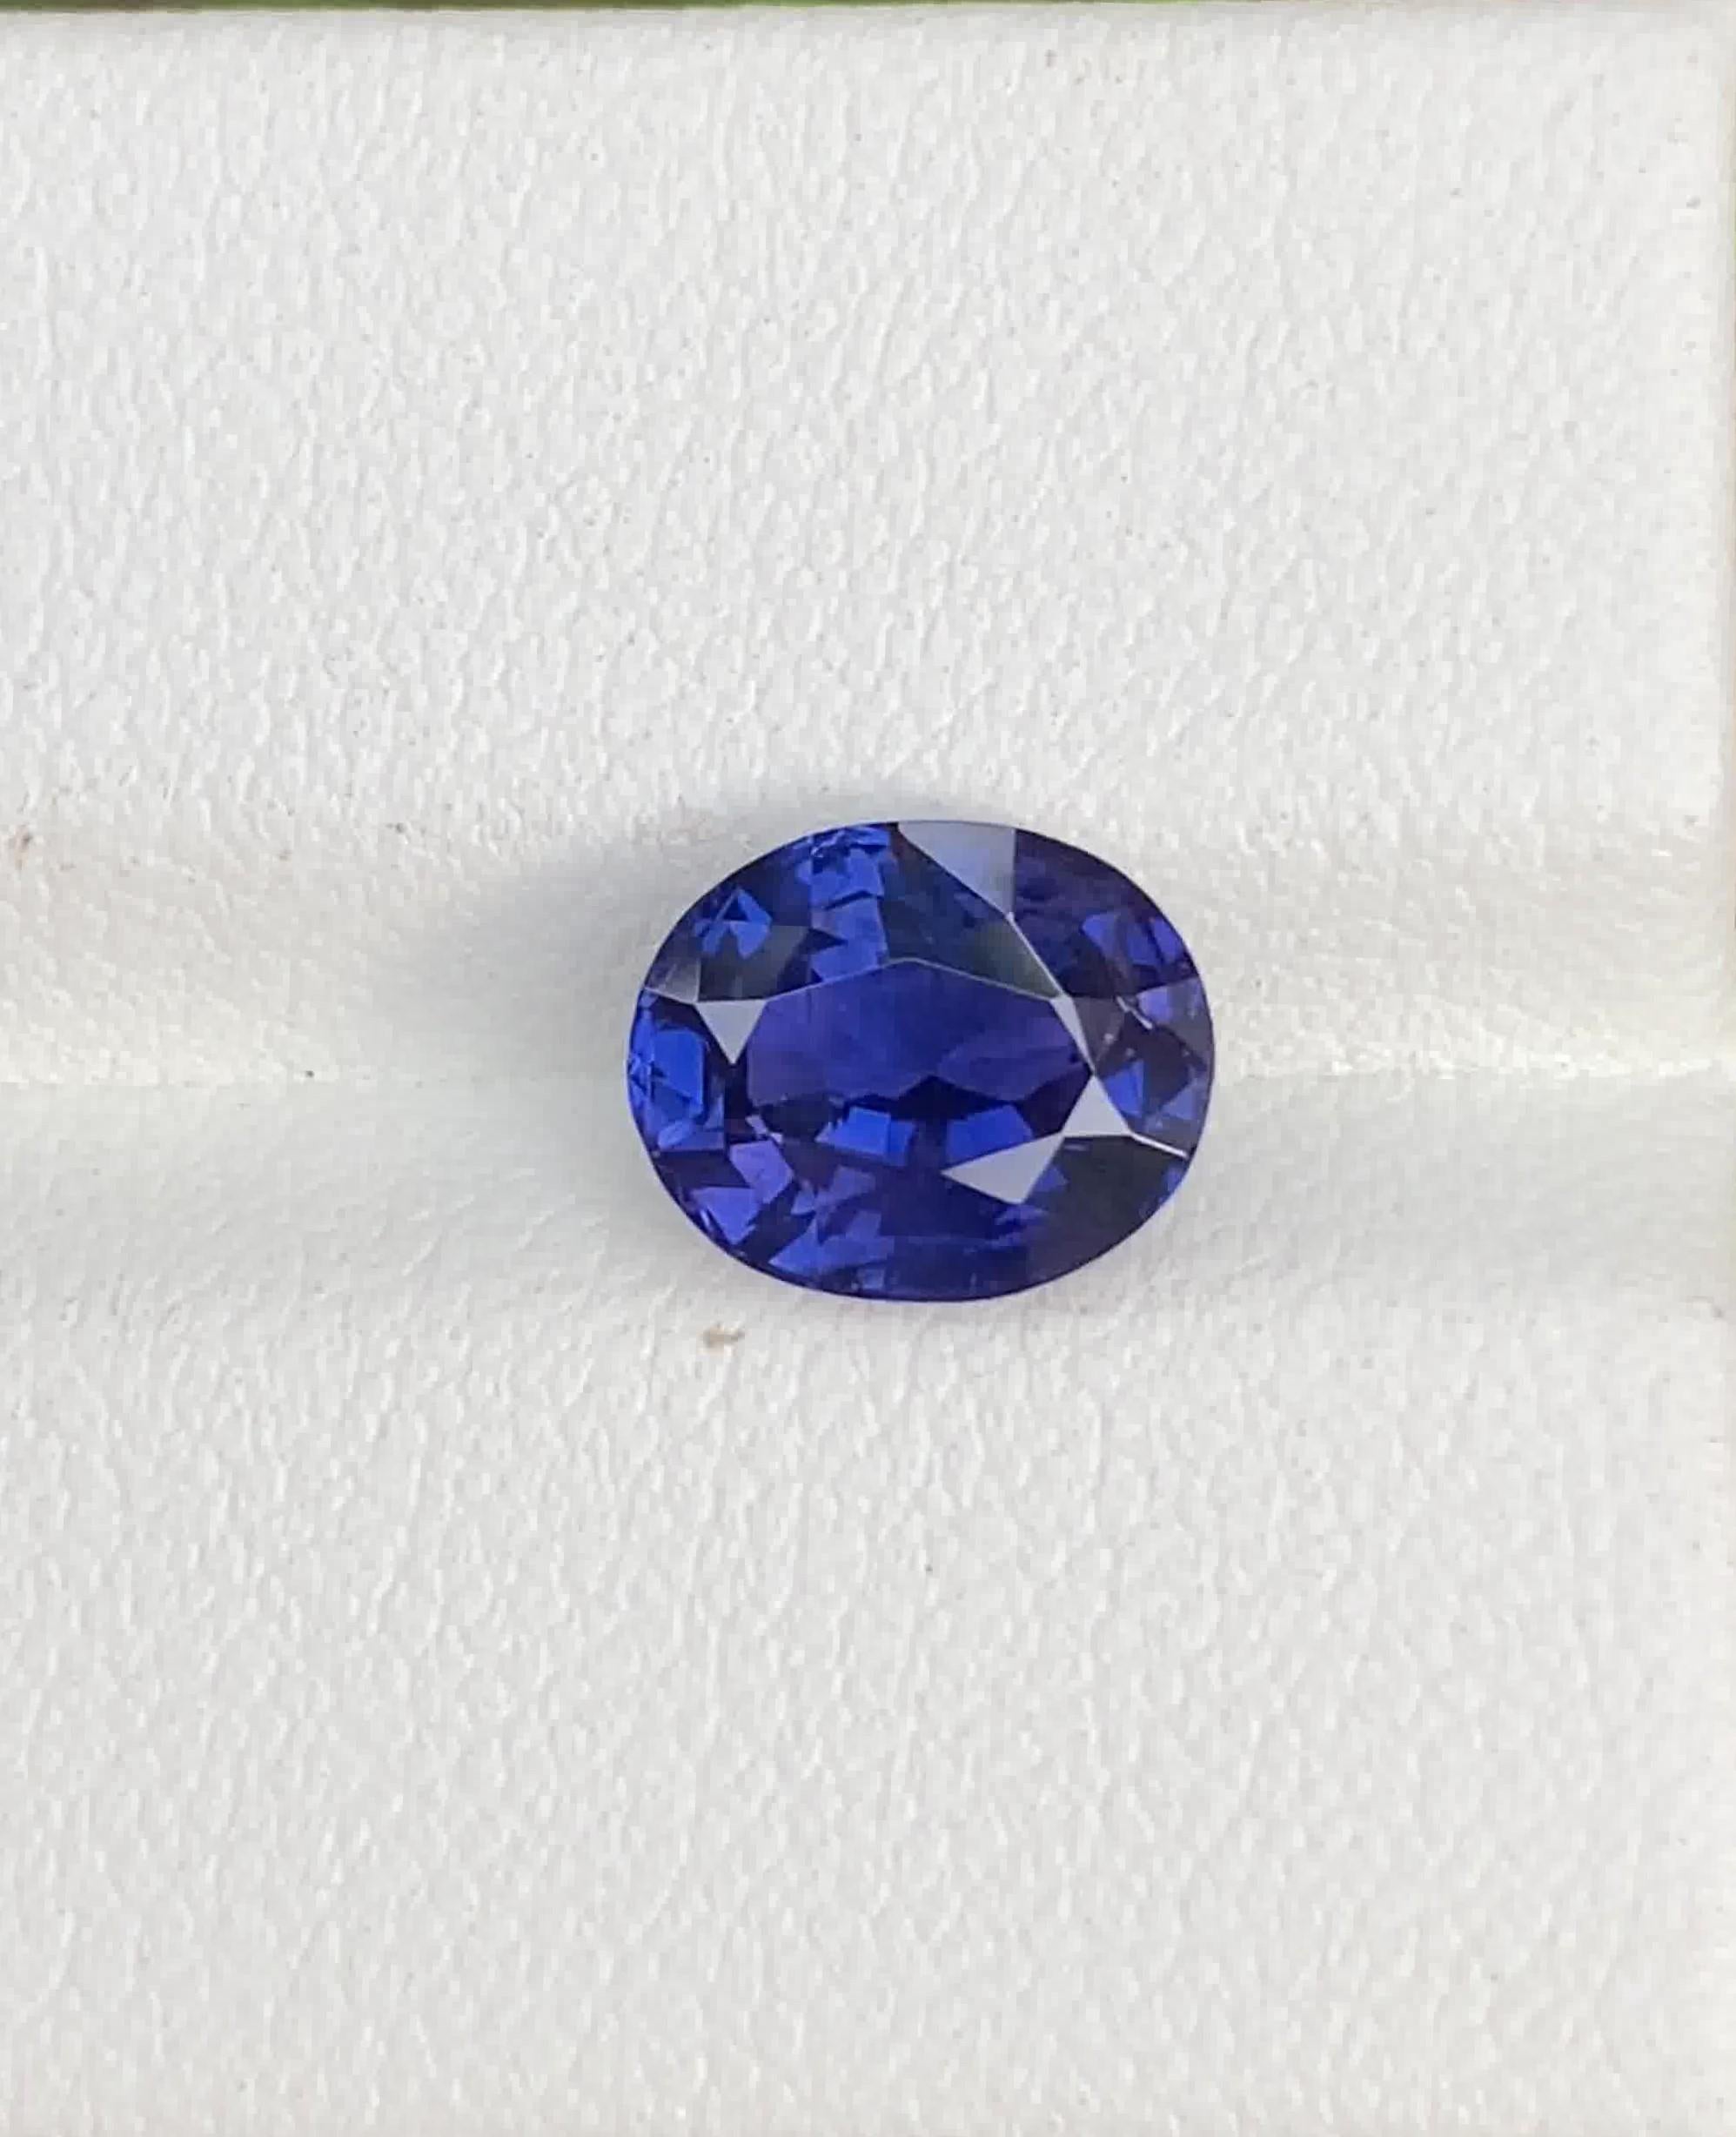 Saphir bleu royal de Ceylan 2.55 Carats pierre non chauffée avec un superbe lustre. Pierre précieuse avec des inclusions naturelles, parfaite pour une bague.

• Variété : Sapphire
• Origine : Sri Lanka (Ceylan)
• Couleur(s) : Bleu royal
• Forme et